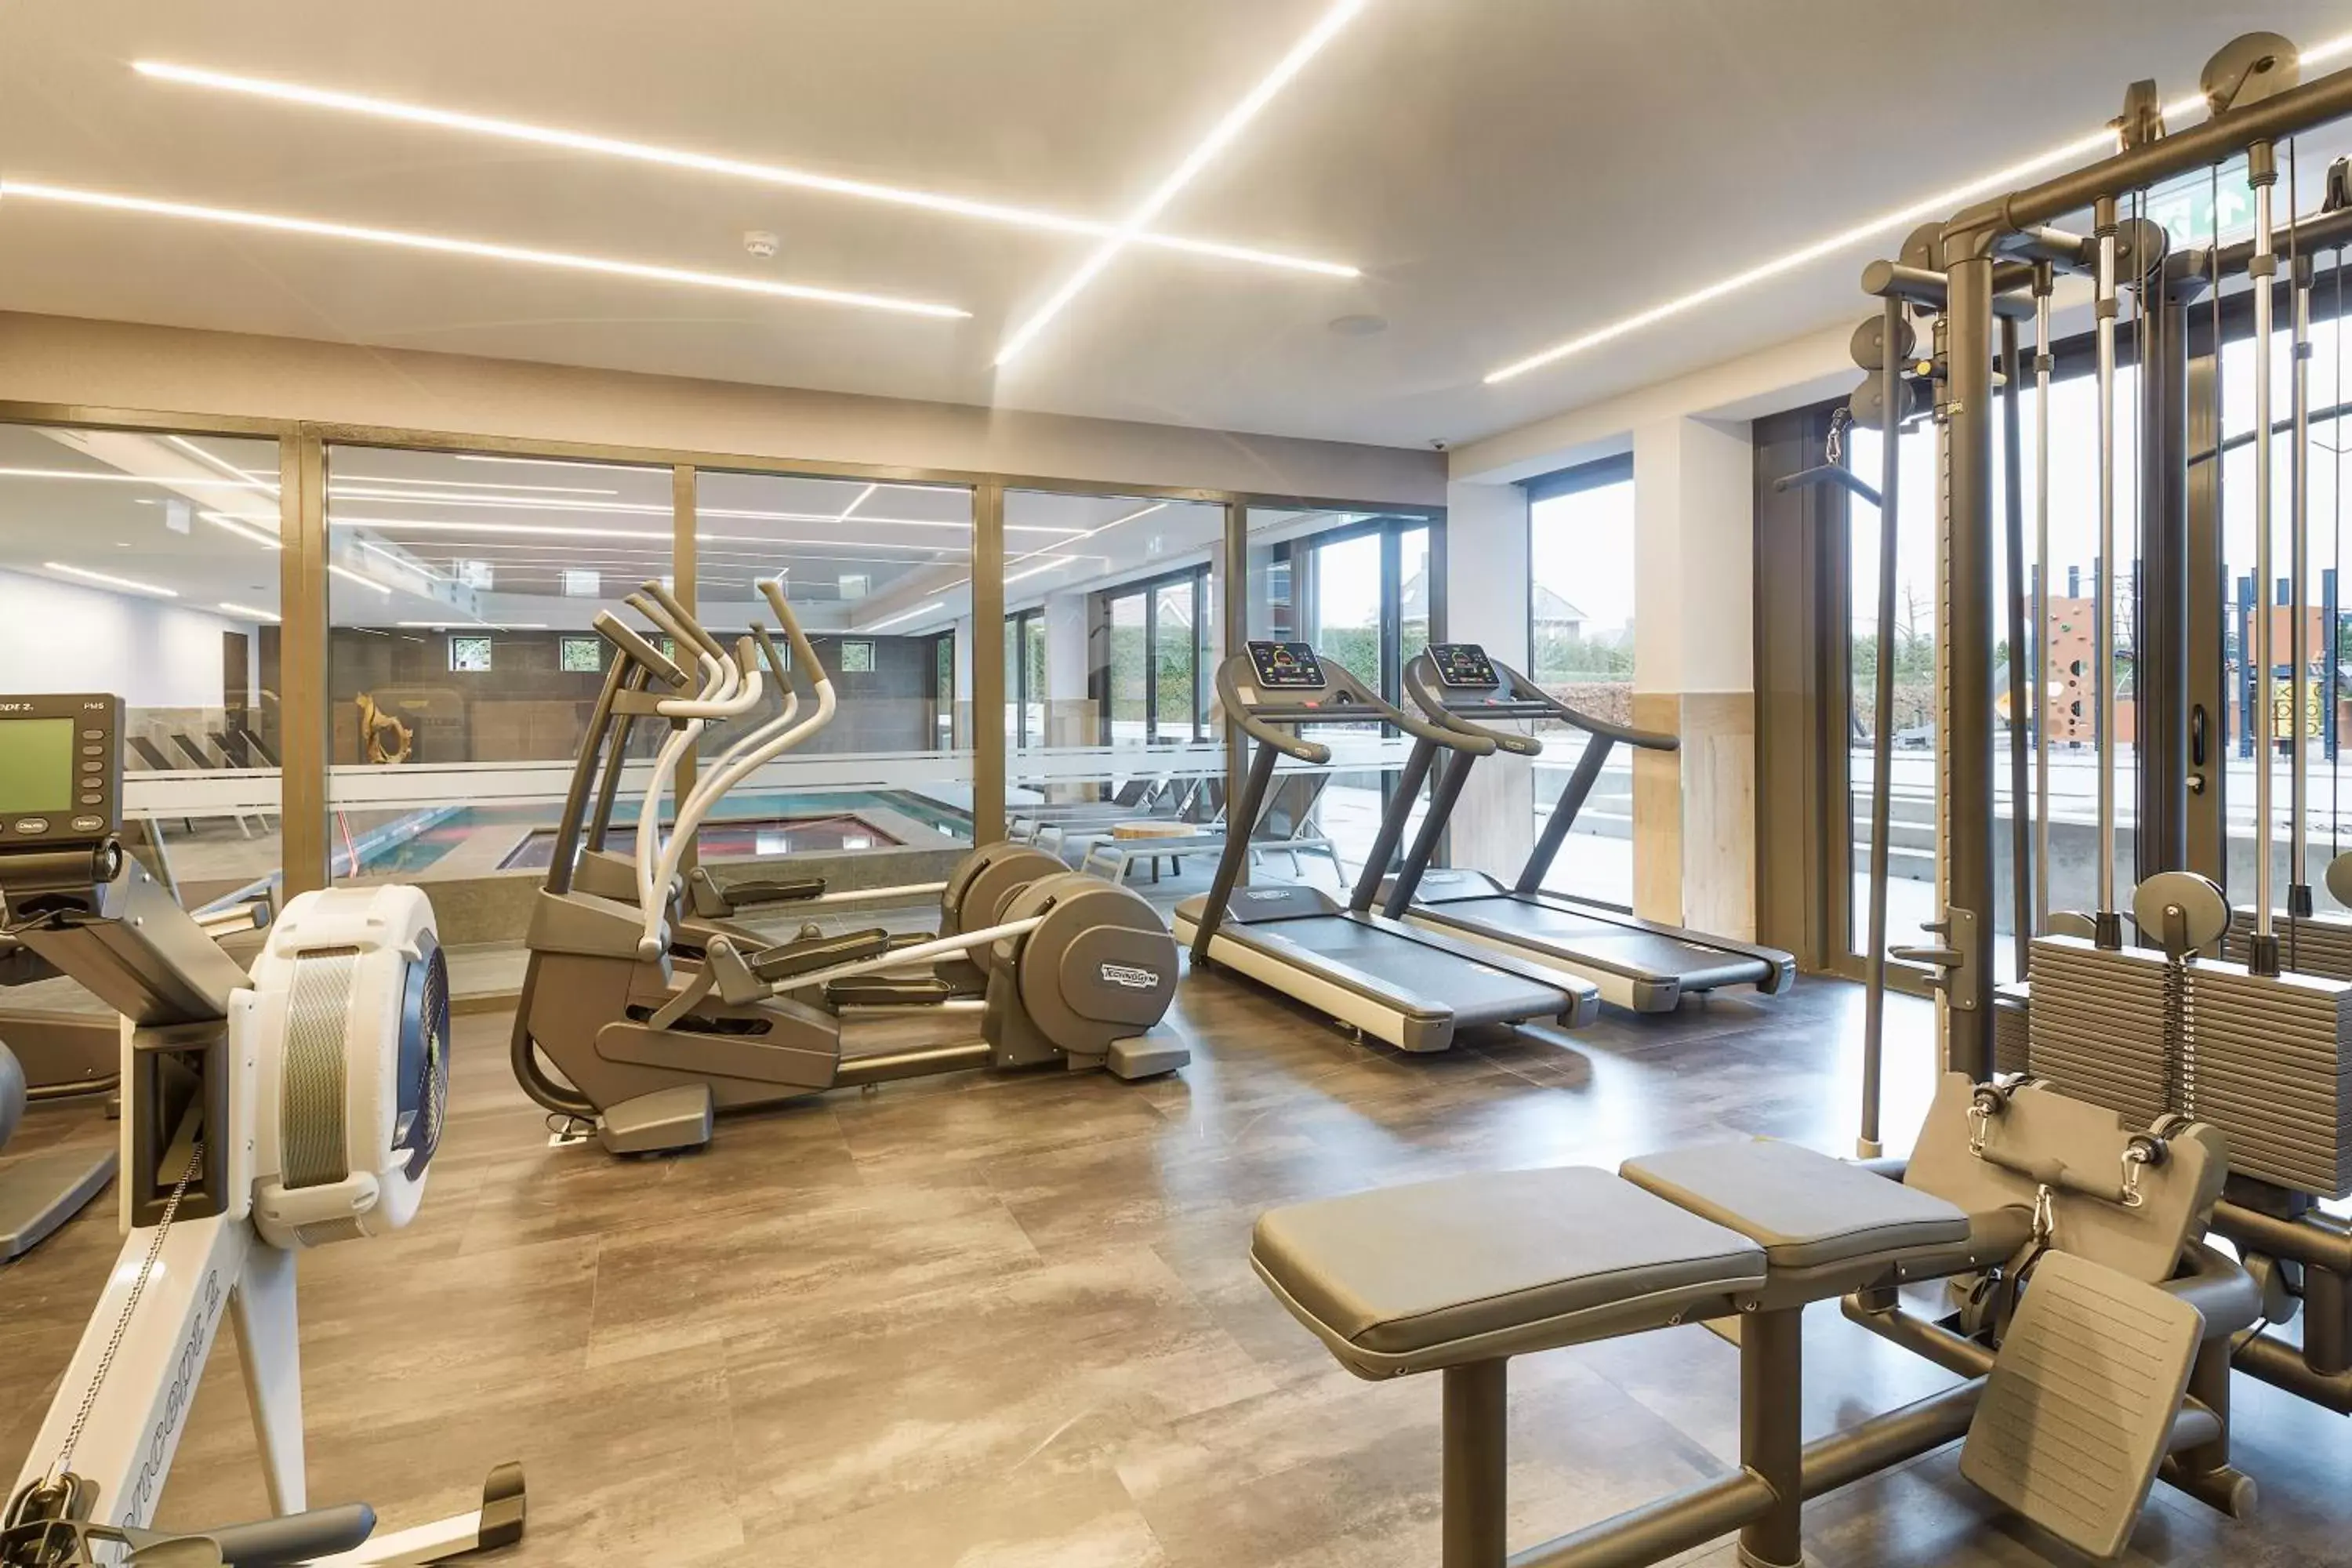 Fitness centre/facilities, Fitness Center/Facilities in Van der Valk Hotel Breda